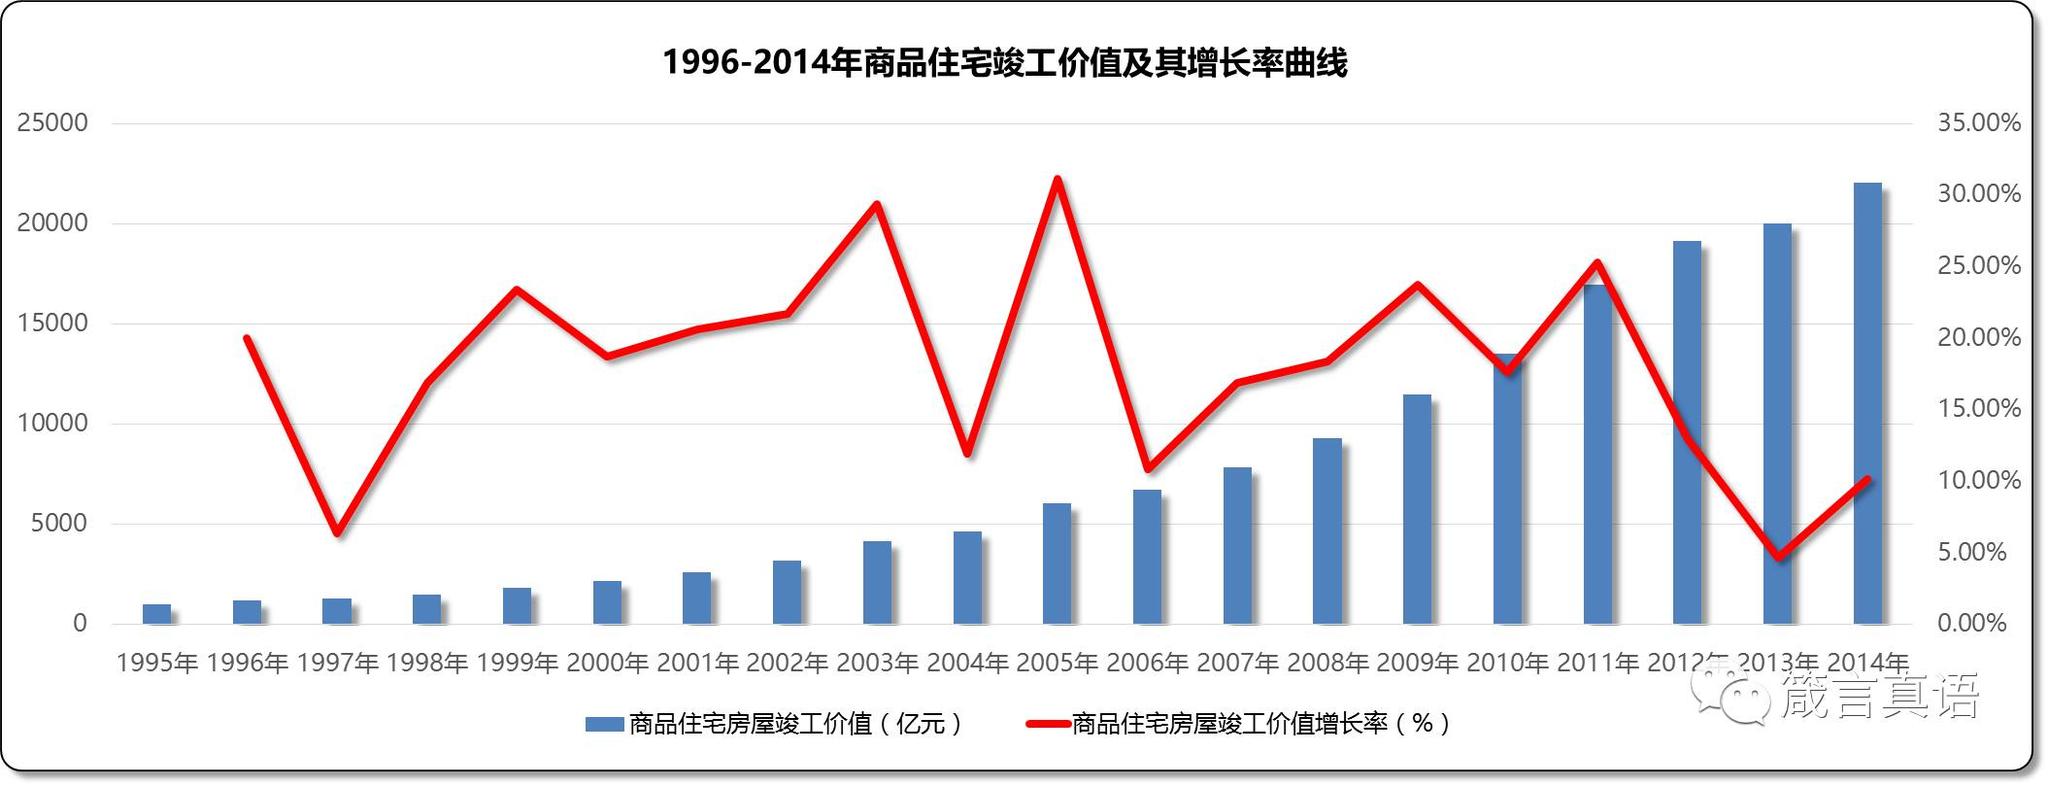 1996-2014年商品住宅竣工价值及其增长率曲线